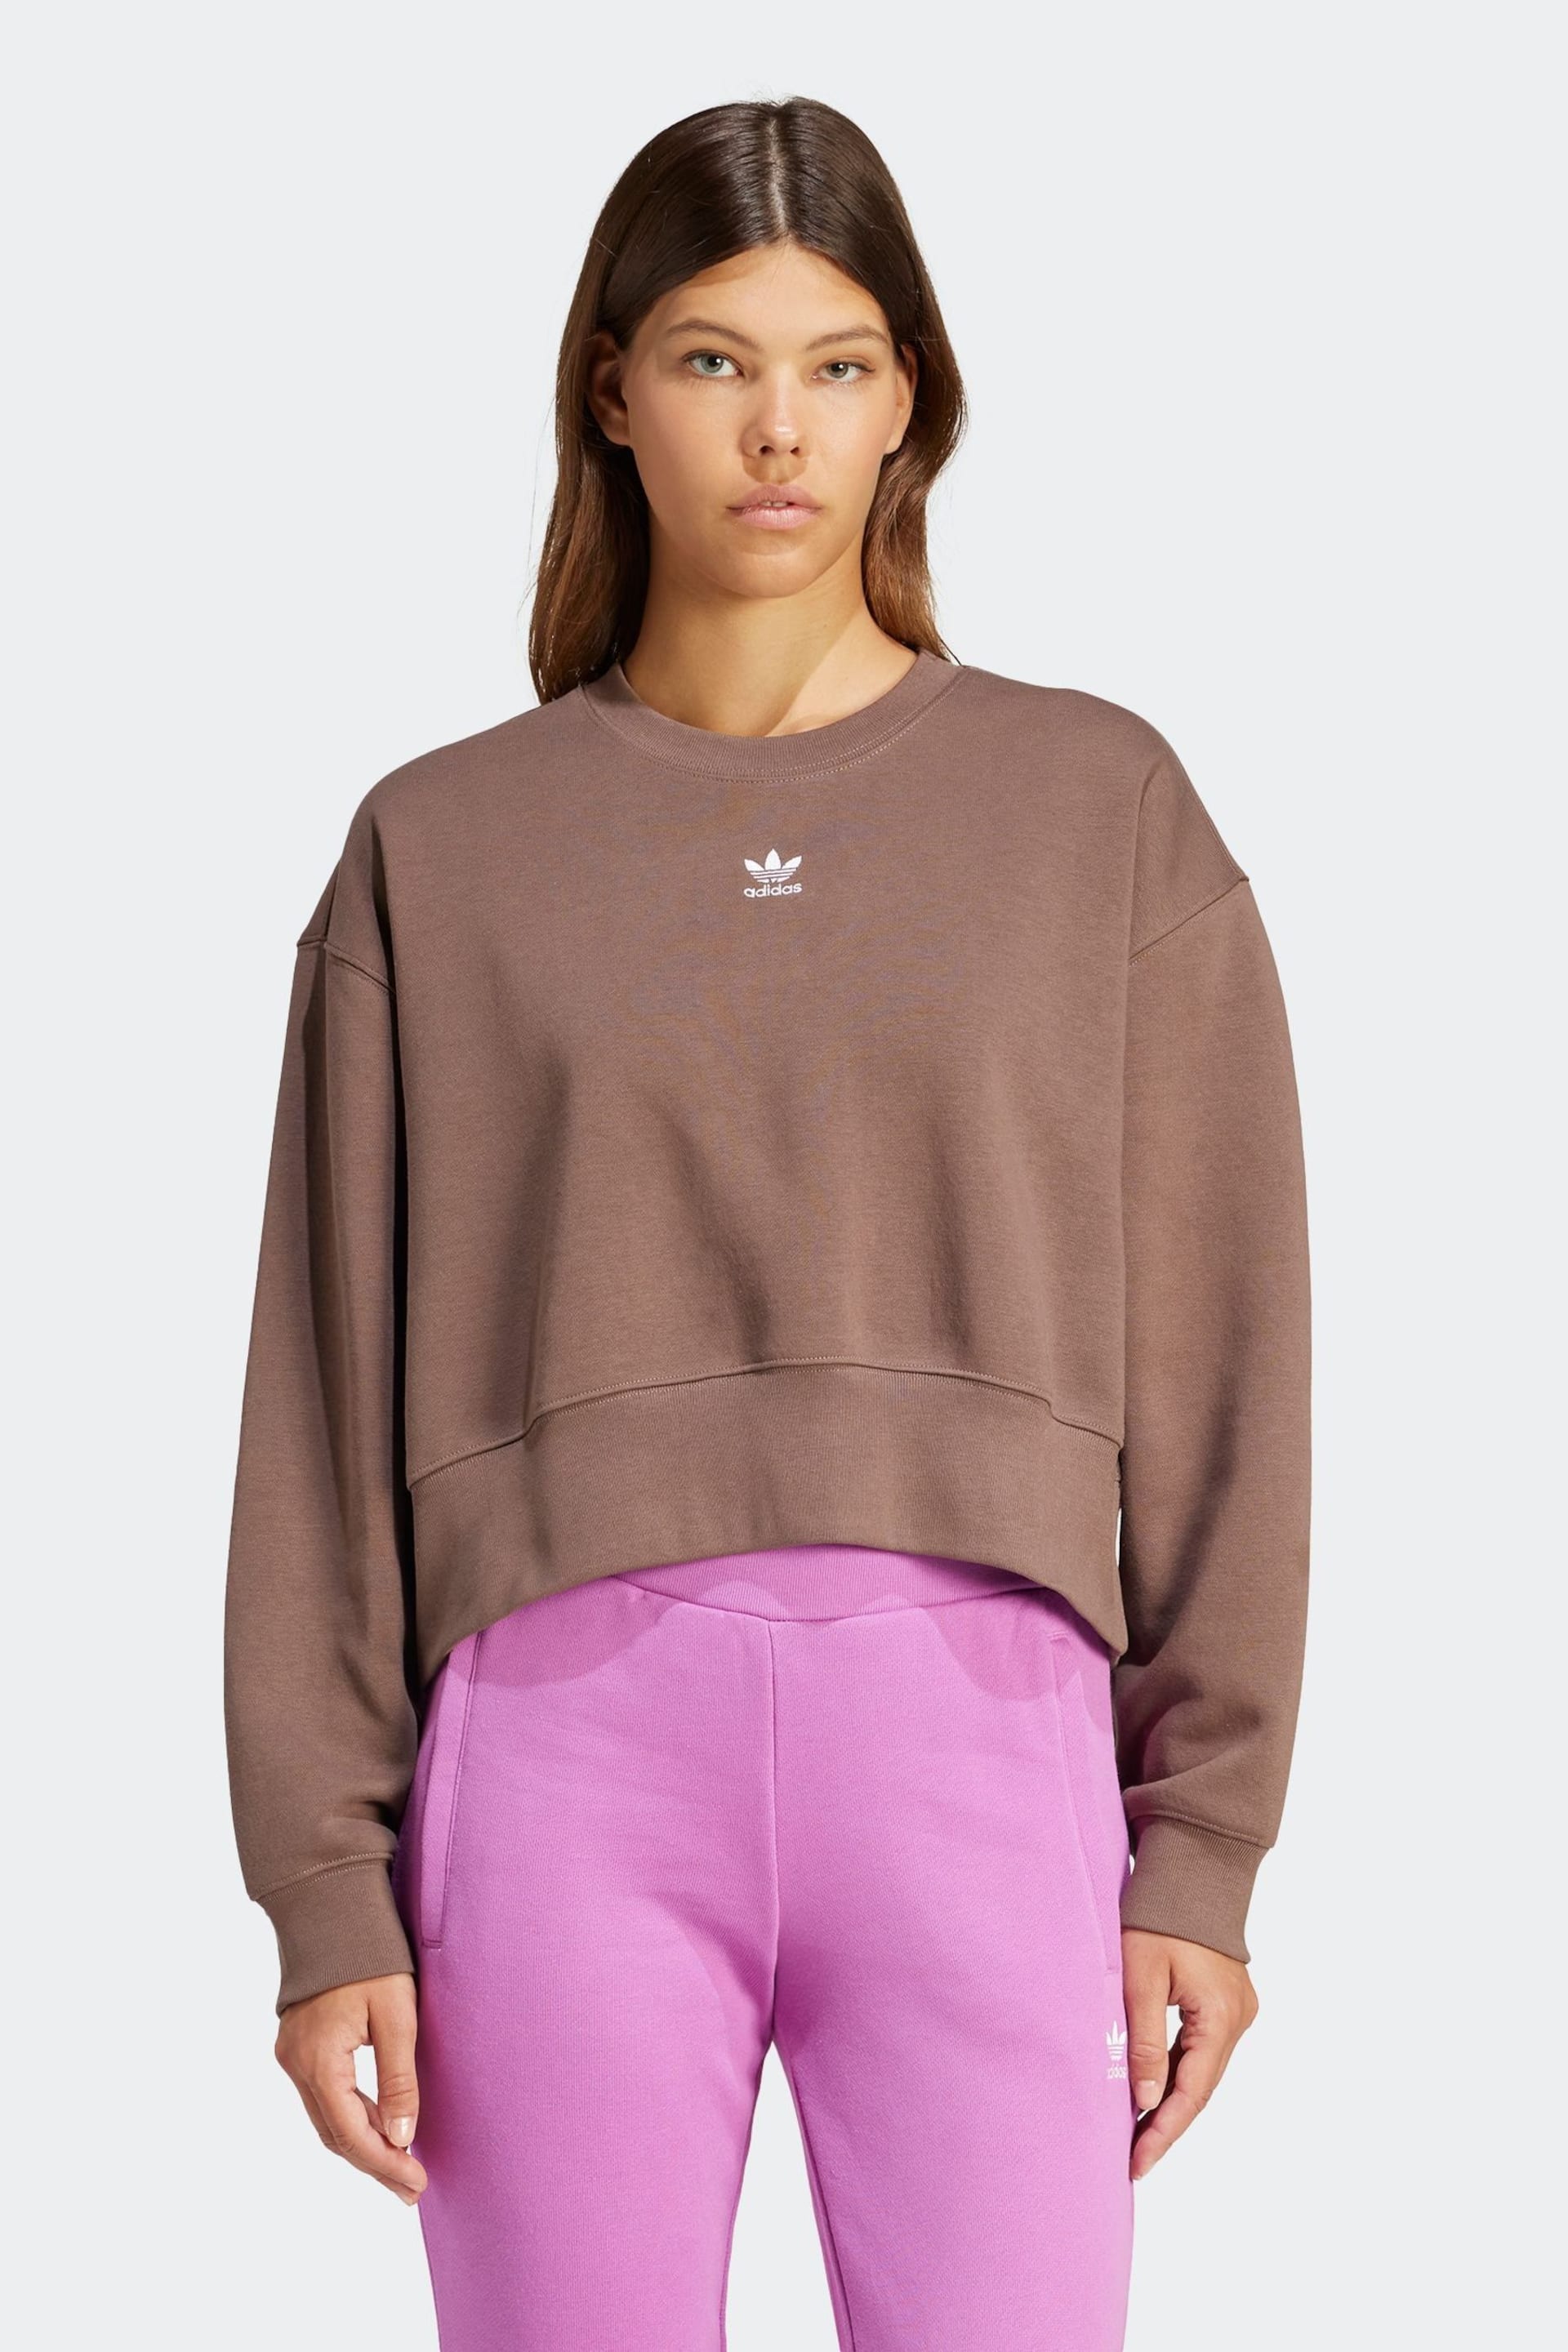 adidas Originals Adicolor Essentials Crew Sweatshirt - Image 1 of 7